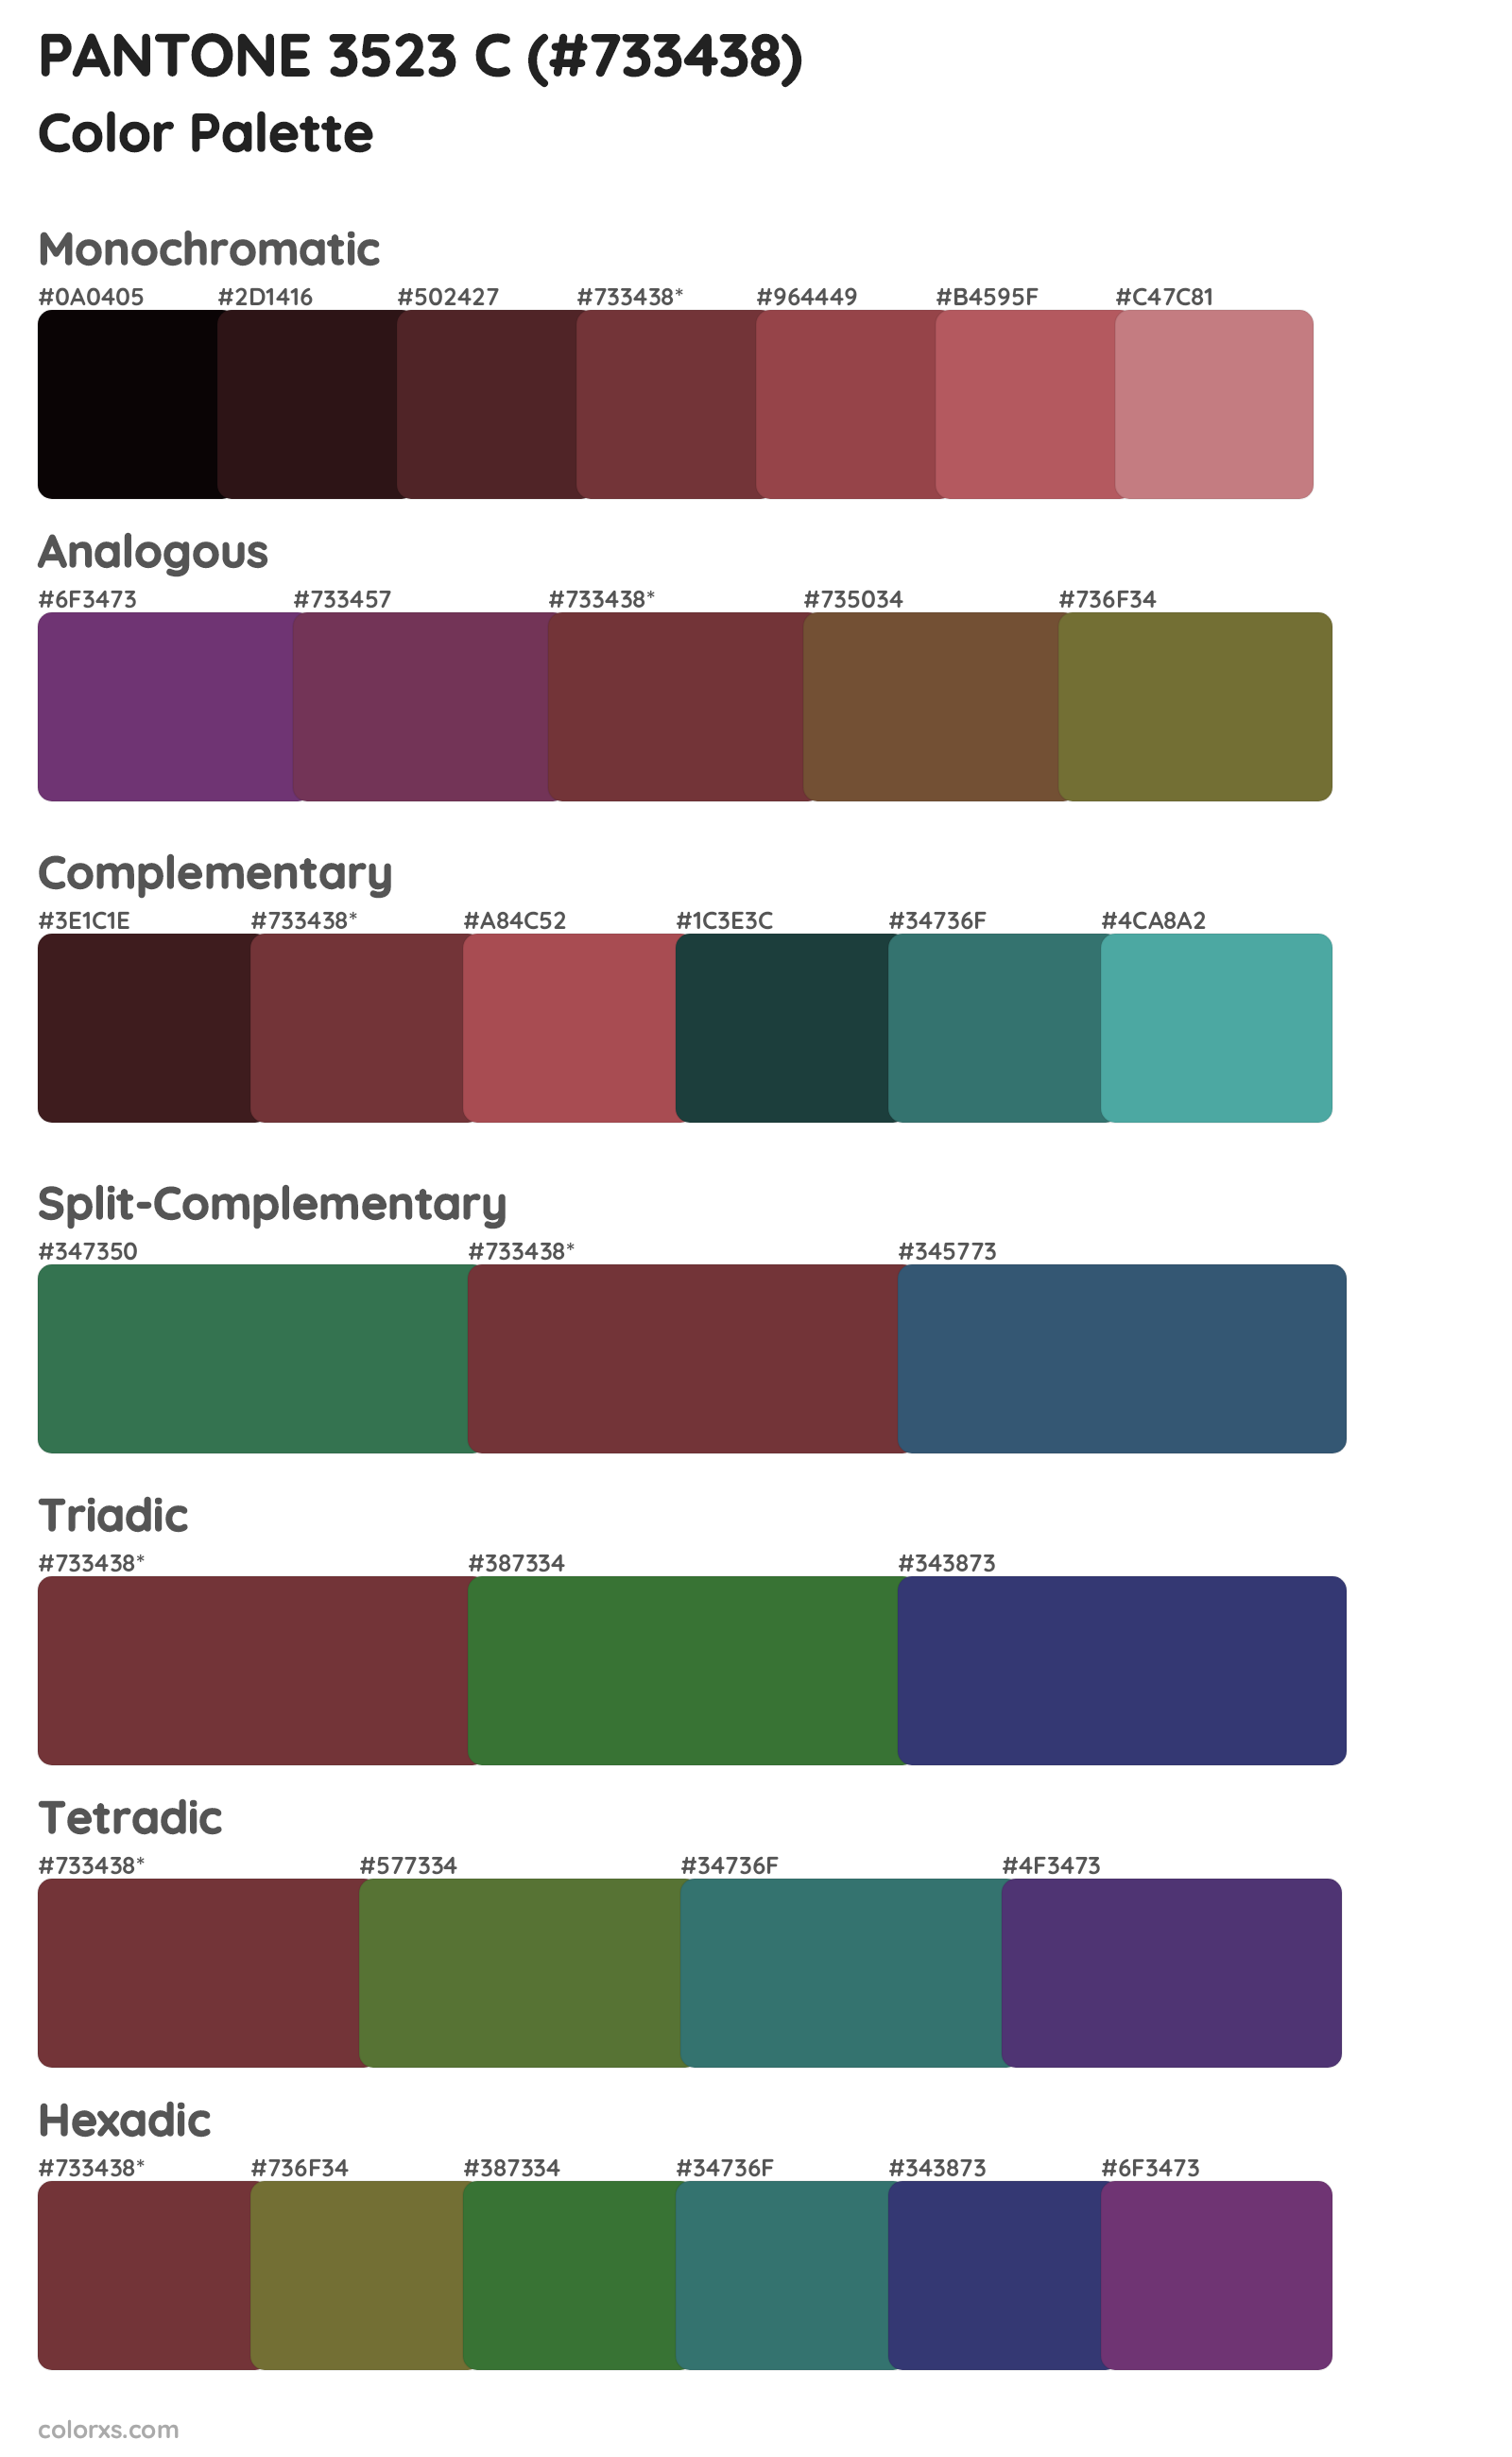 PANTONE 3523 C Color Scheme Palettes